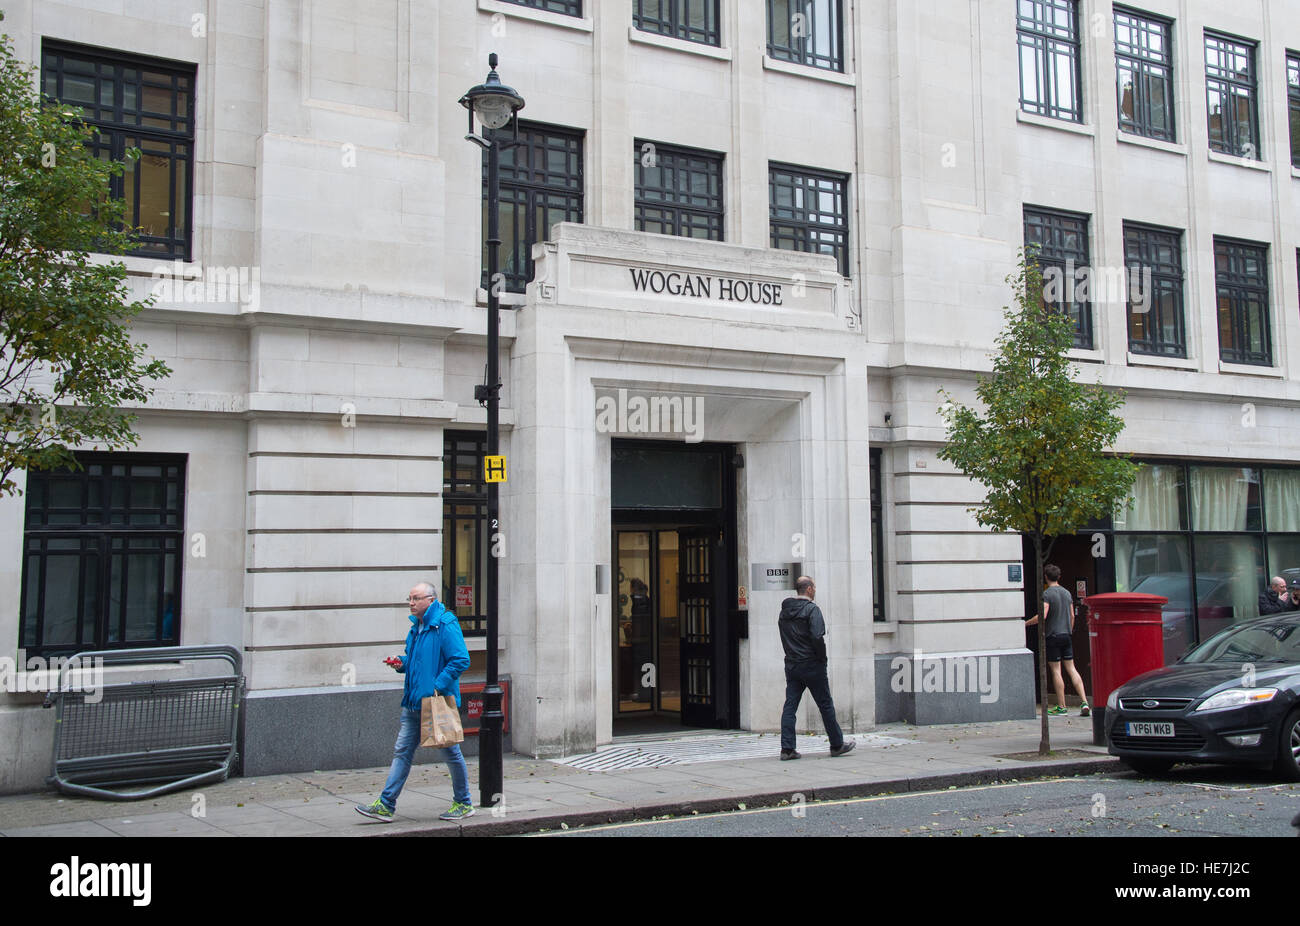 BBC Radio 2 edificio rinominato Wogan House offre: atmosfera, Wogan House  dove: Londra, Regno Unito quando: 17 Nov 2016 Foto stock - Alamy